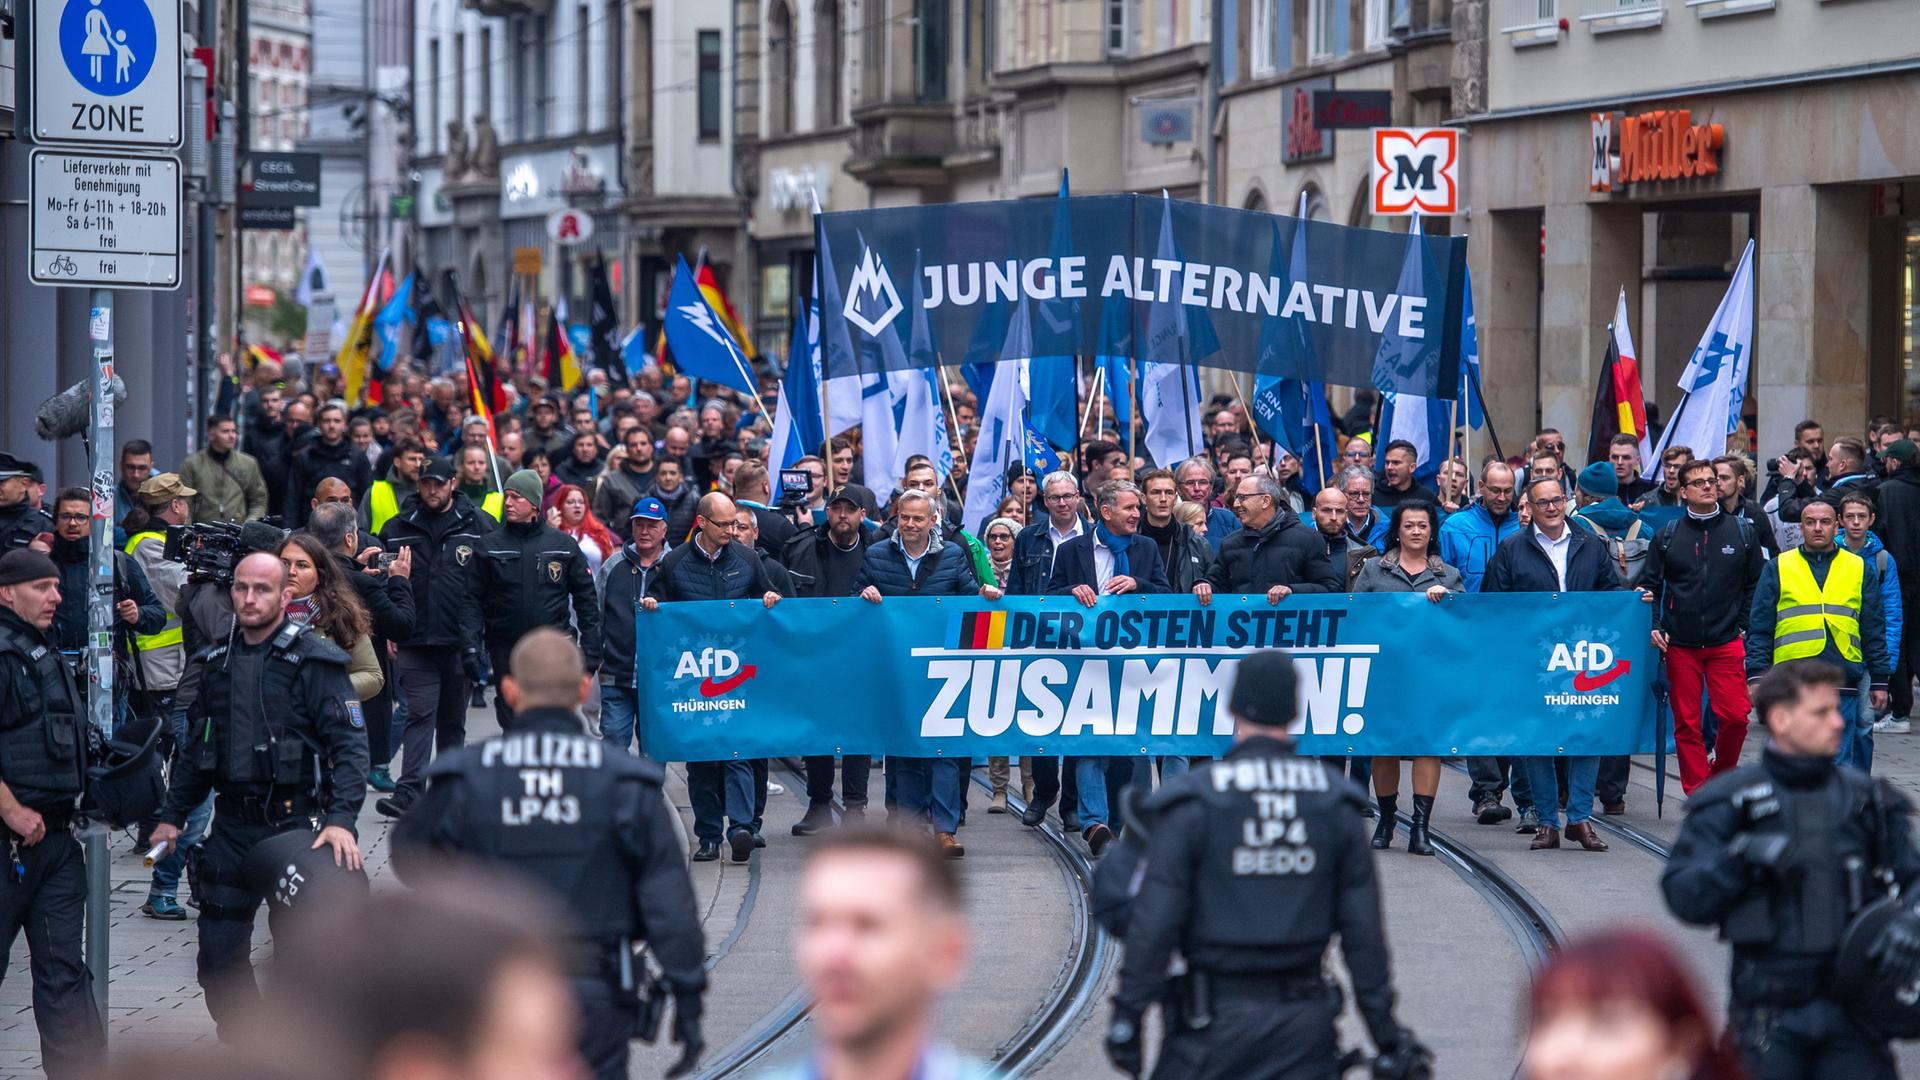 Eine AfD-Demonstration in Erfurt mit vielen Plakaten und Fahnen